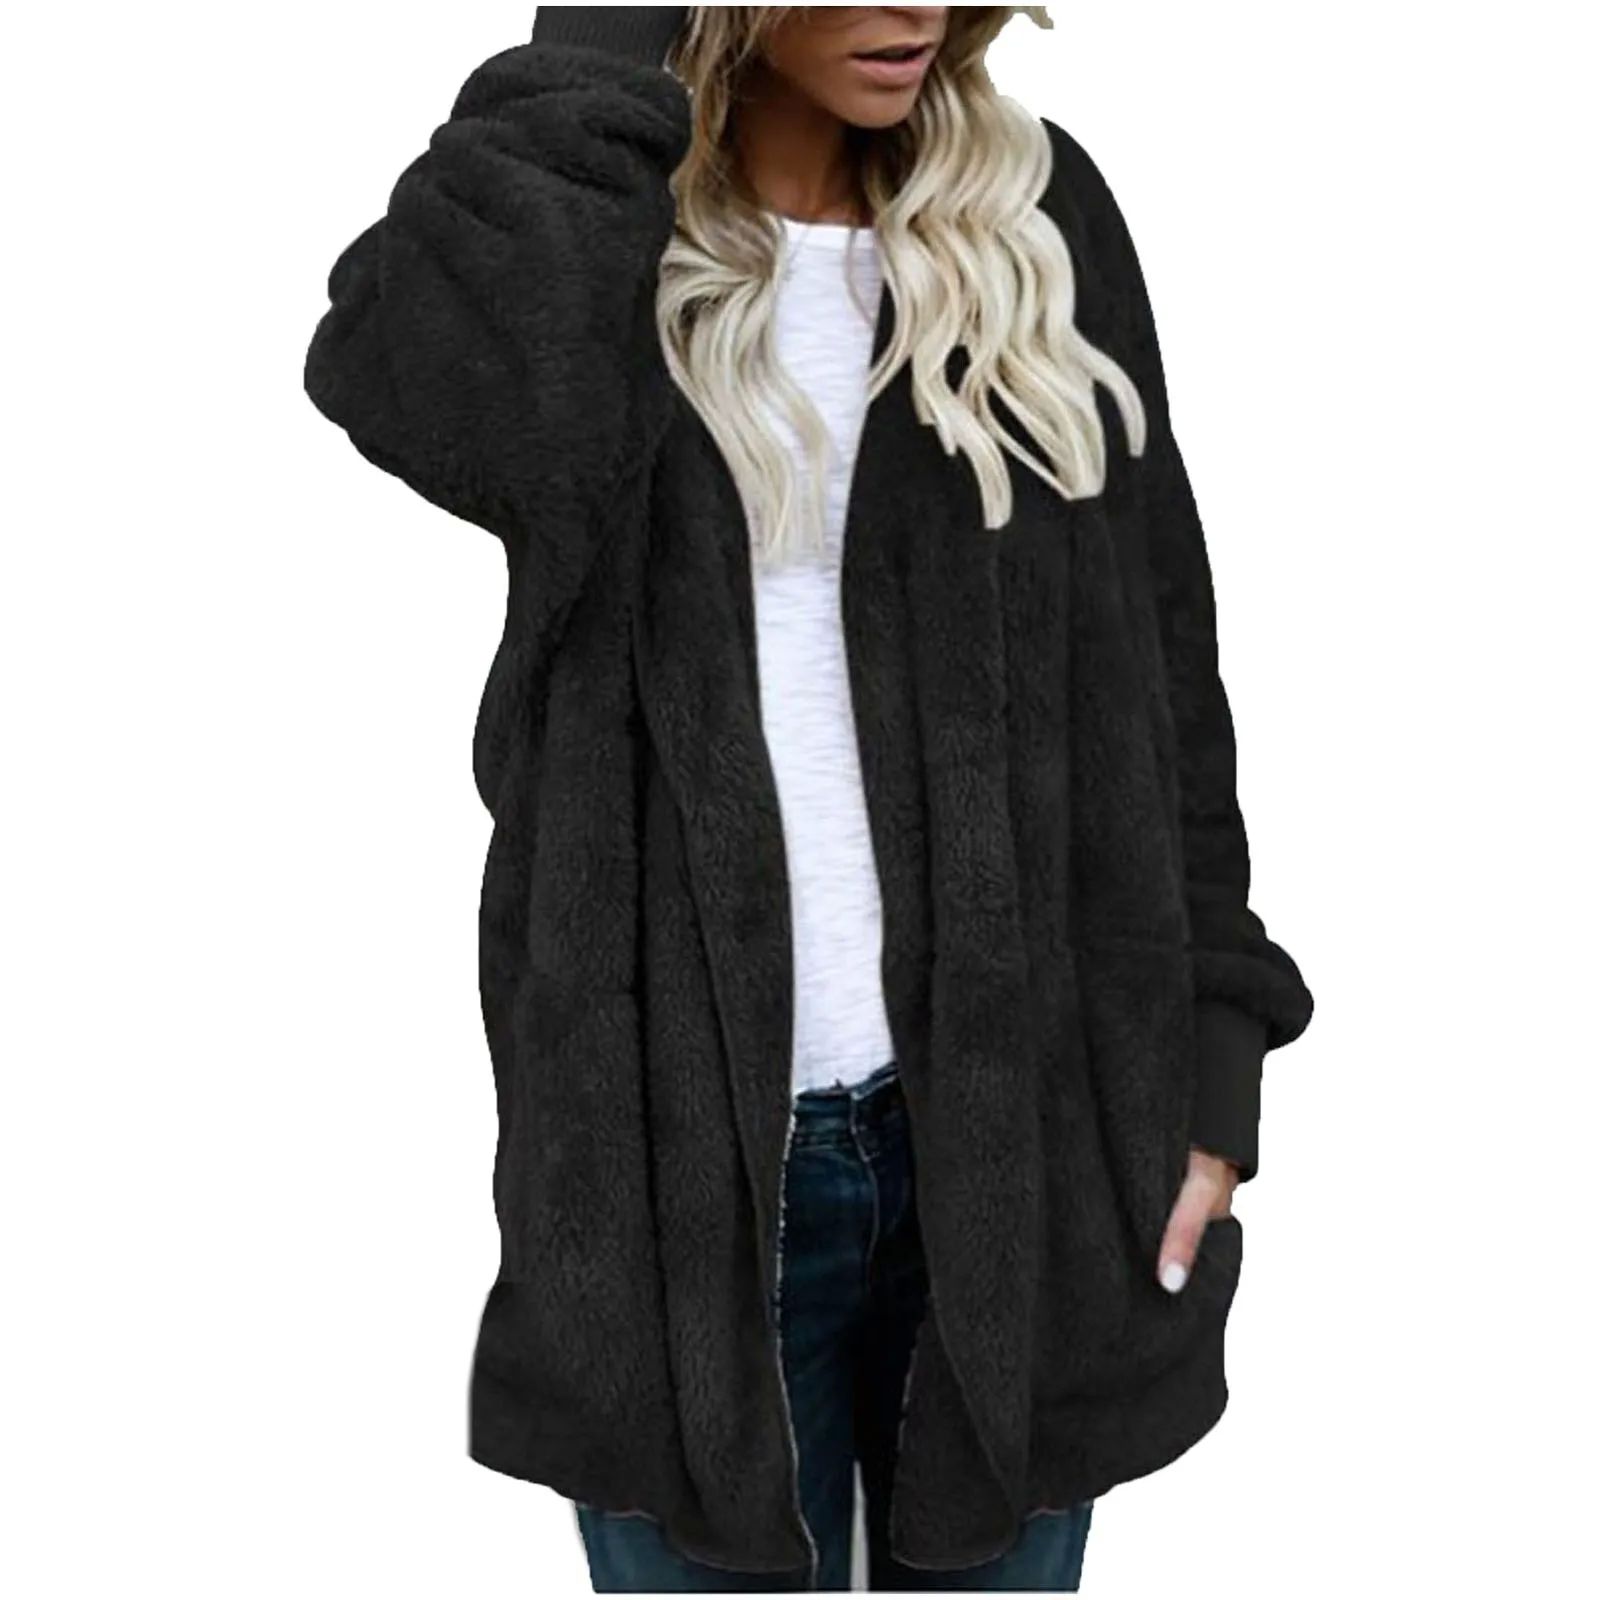 Plus Size Women Winter Warm Coat Jacket Outwear Ladies Cardi-图1